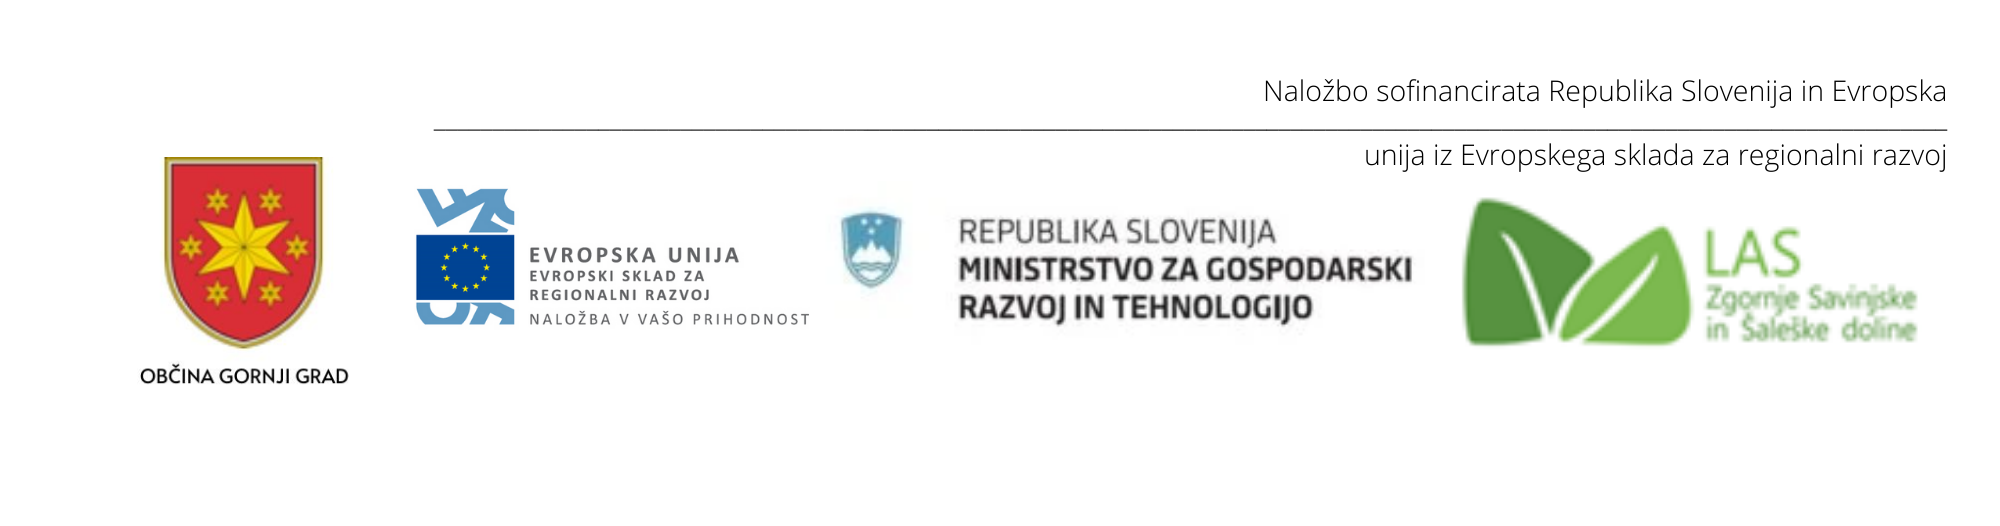 Naložbo sofinancirata Republika Slovenija in Evropska unija iz Evropskega sklada za regionalni razvoj (002)